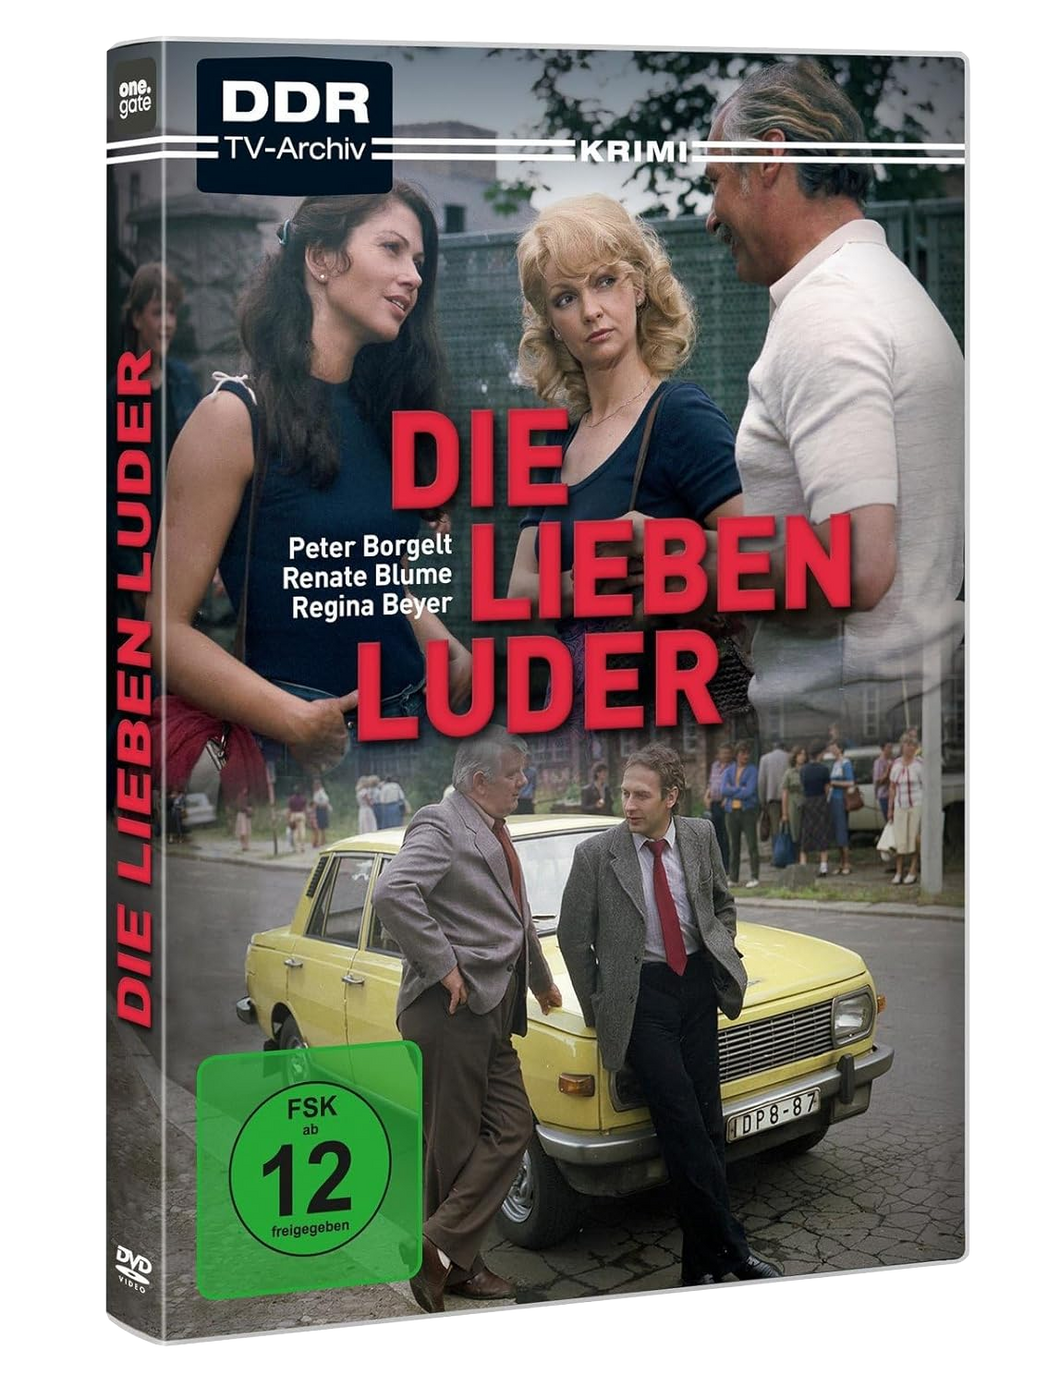 Die lieben Luder (DVD)